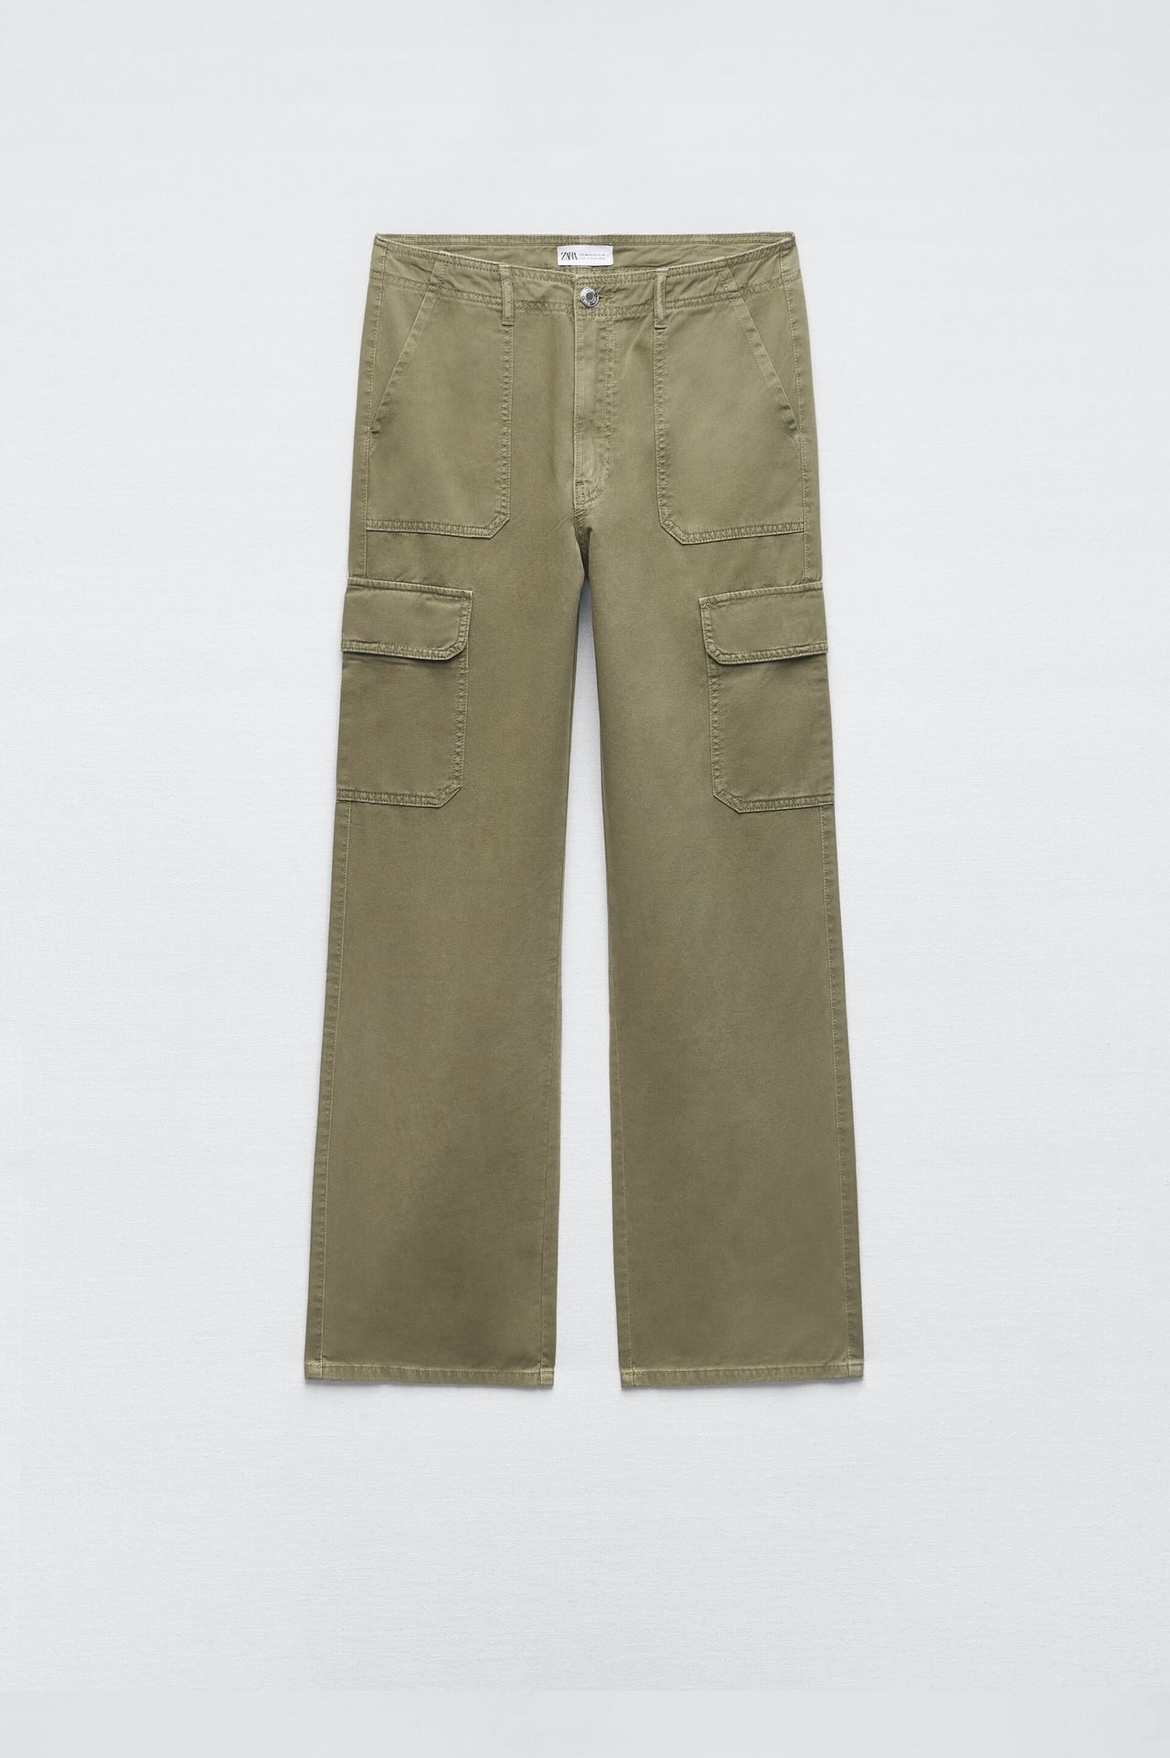 Pantalones cargo oversize de Zara (25,99 euros).